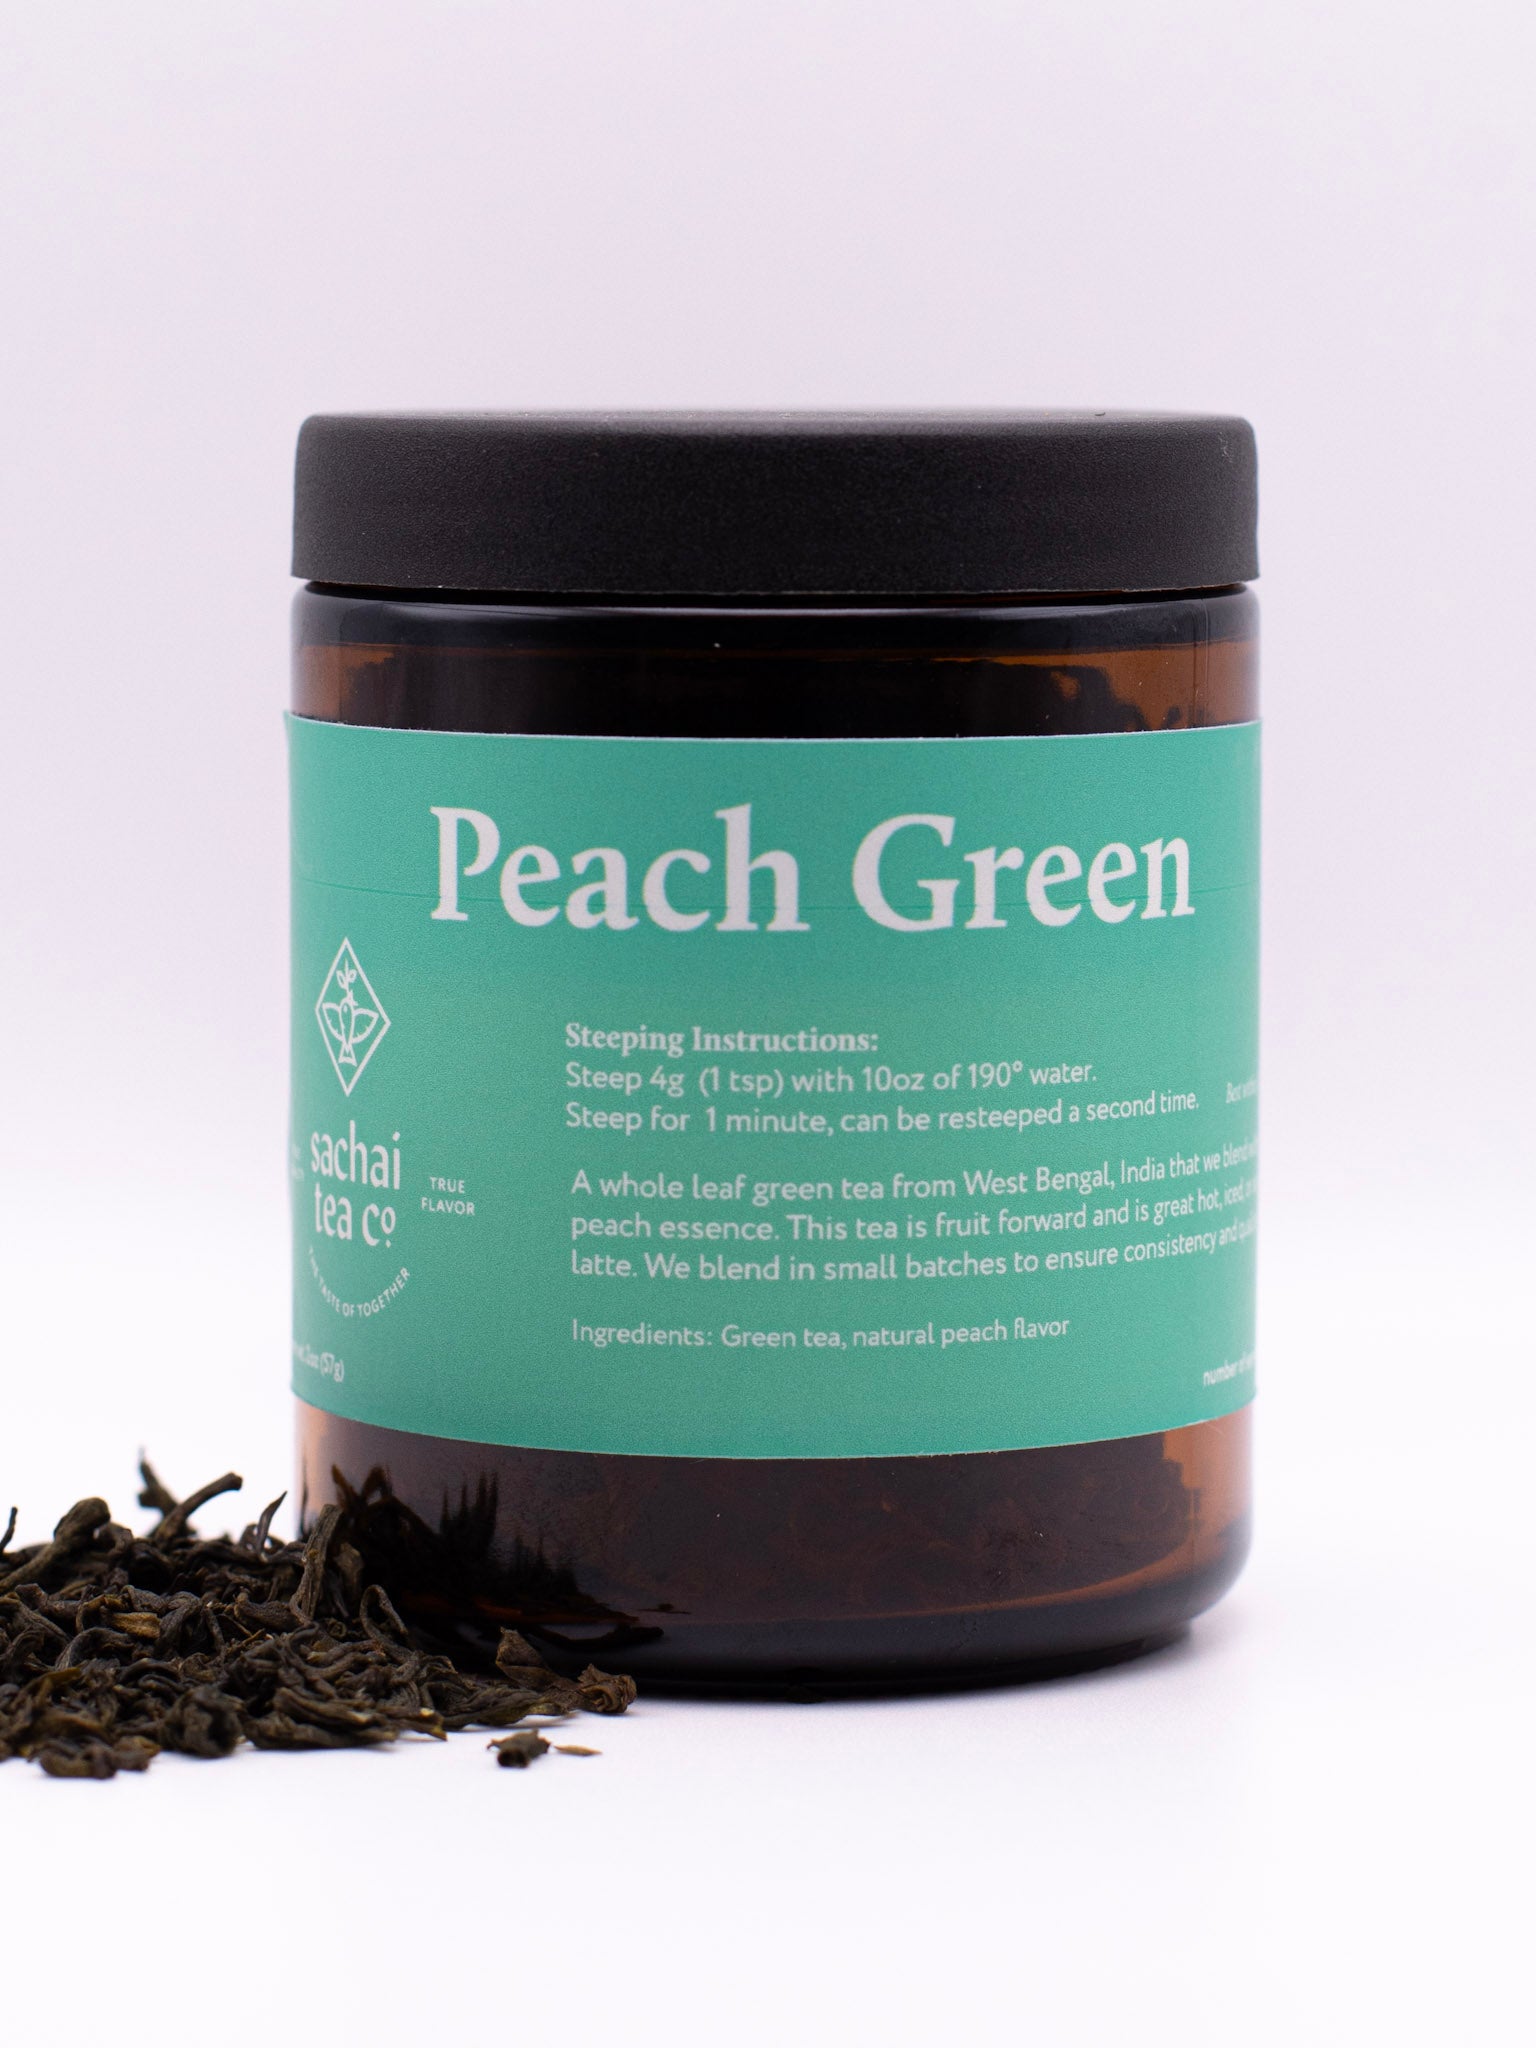 Peach Green Tea